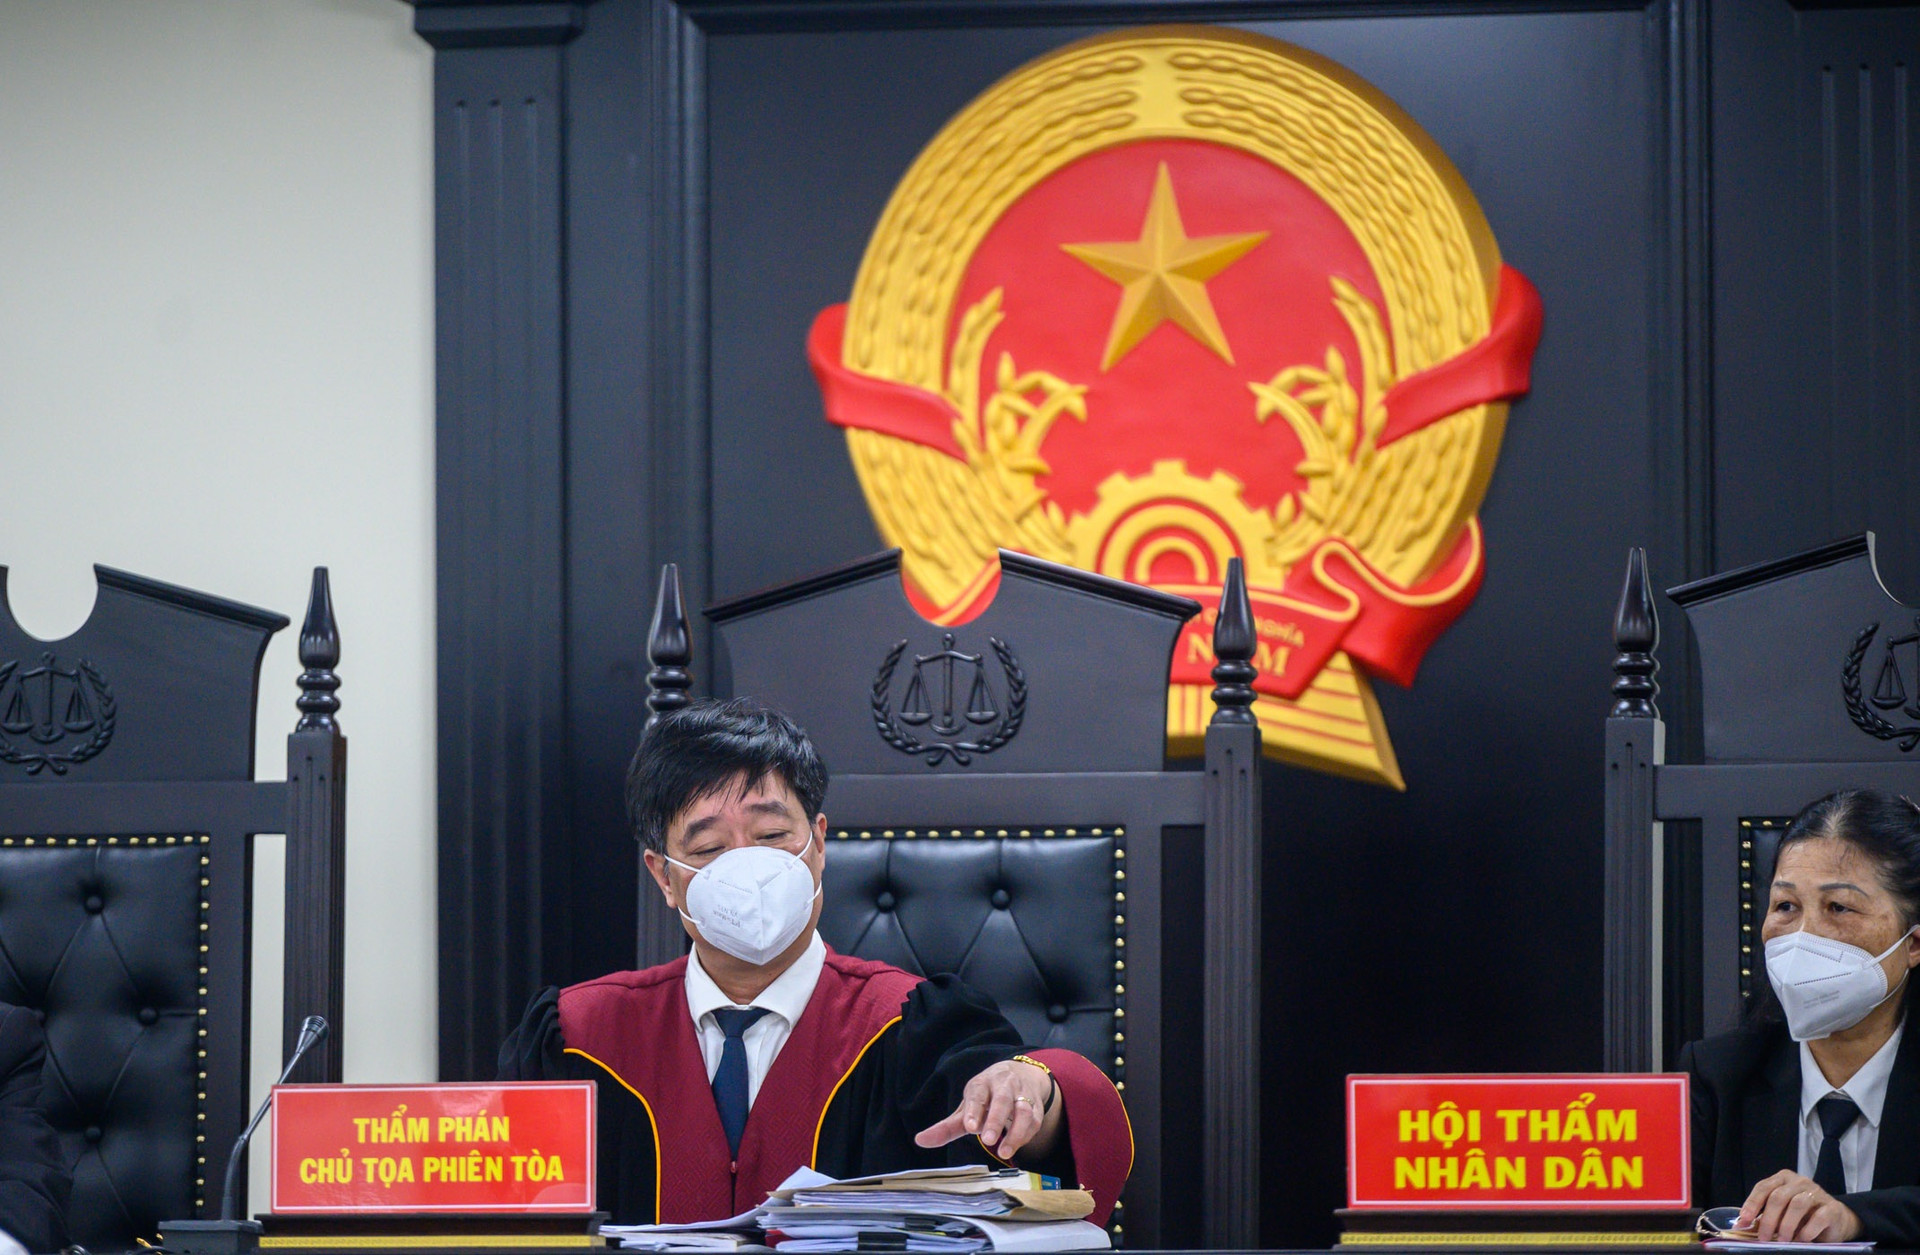 Ông Nguyễn Quang Tuấn nói bị bệnh tim, xin giảm hình phạt cho bị cáo khác - 2